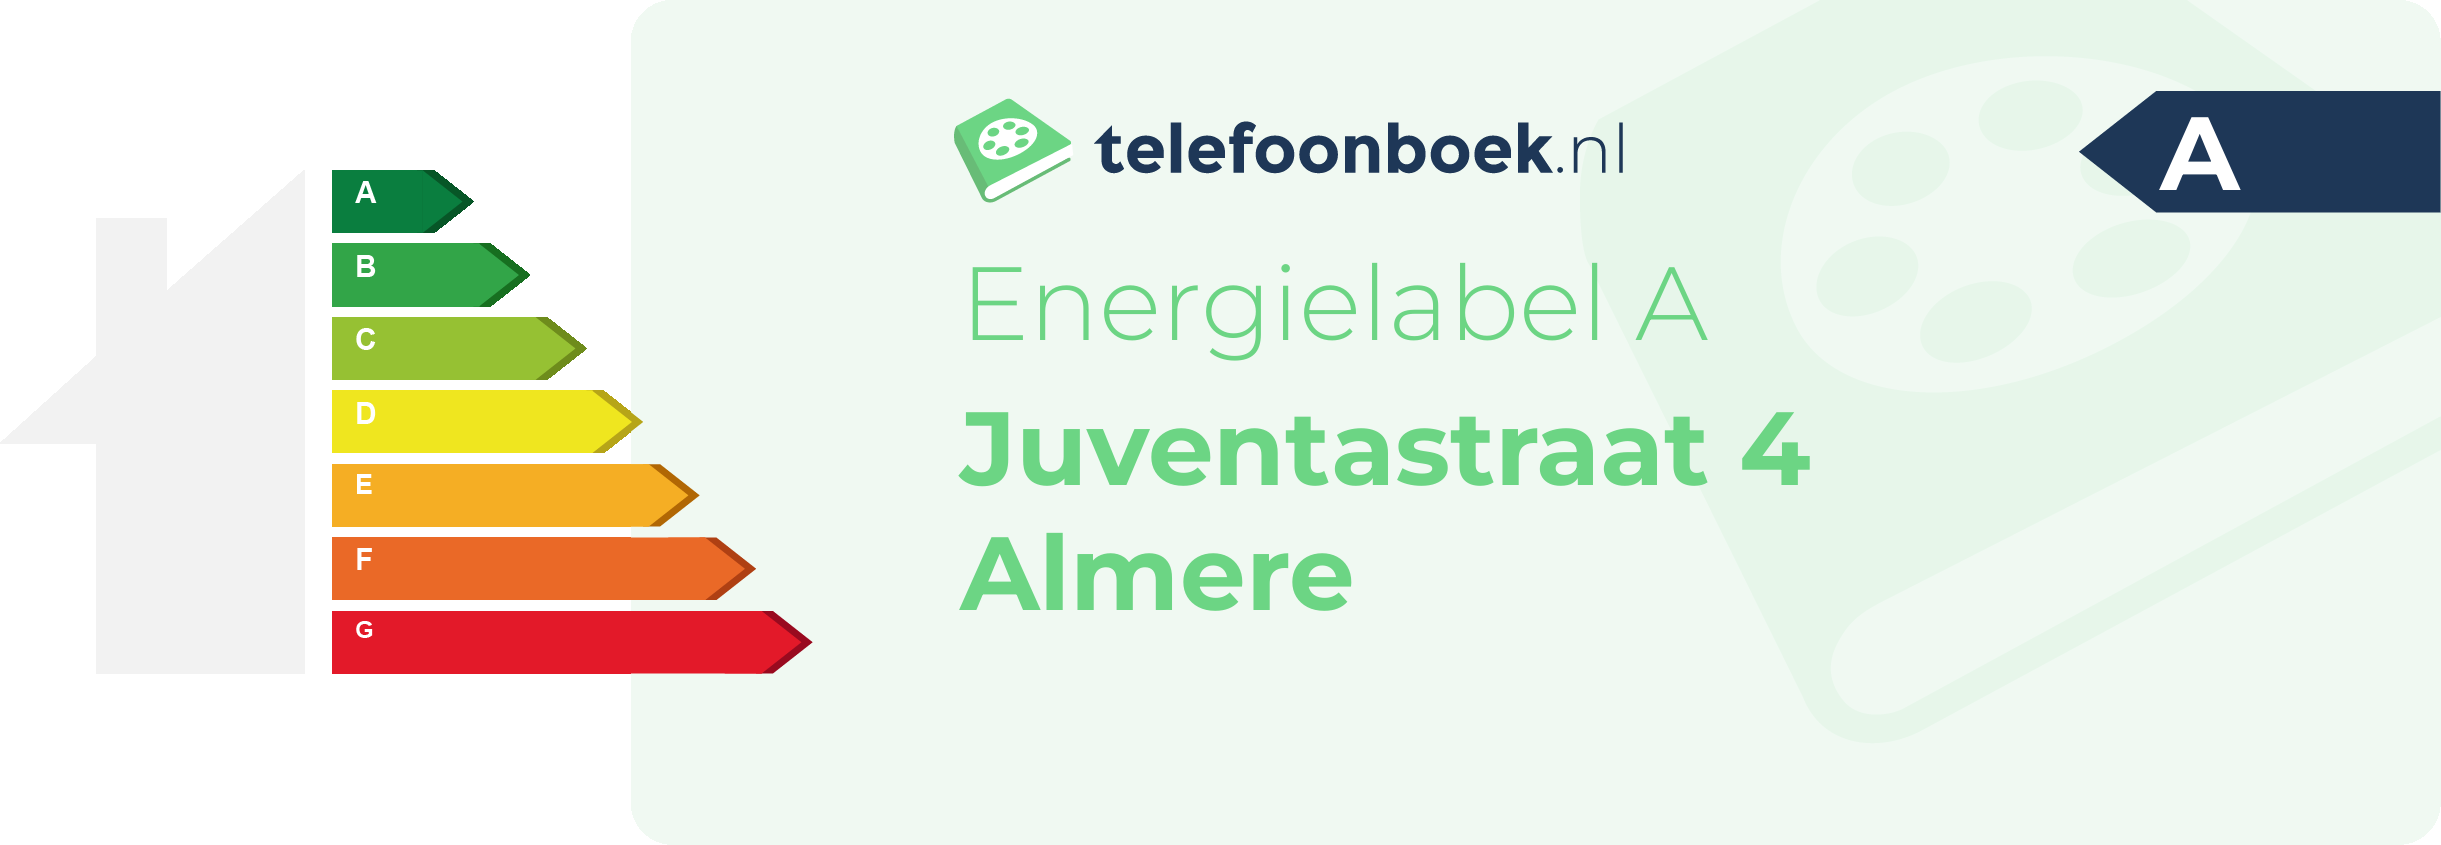 Energielabel Juventastraat 4 Almere